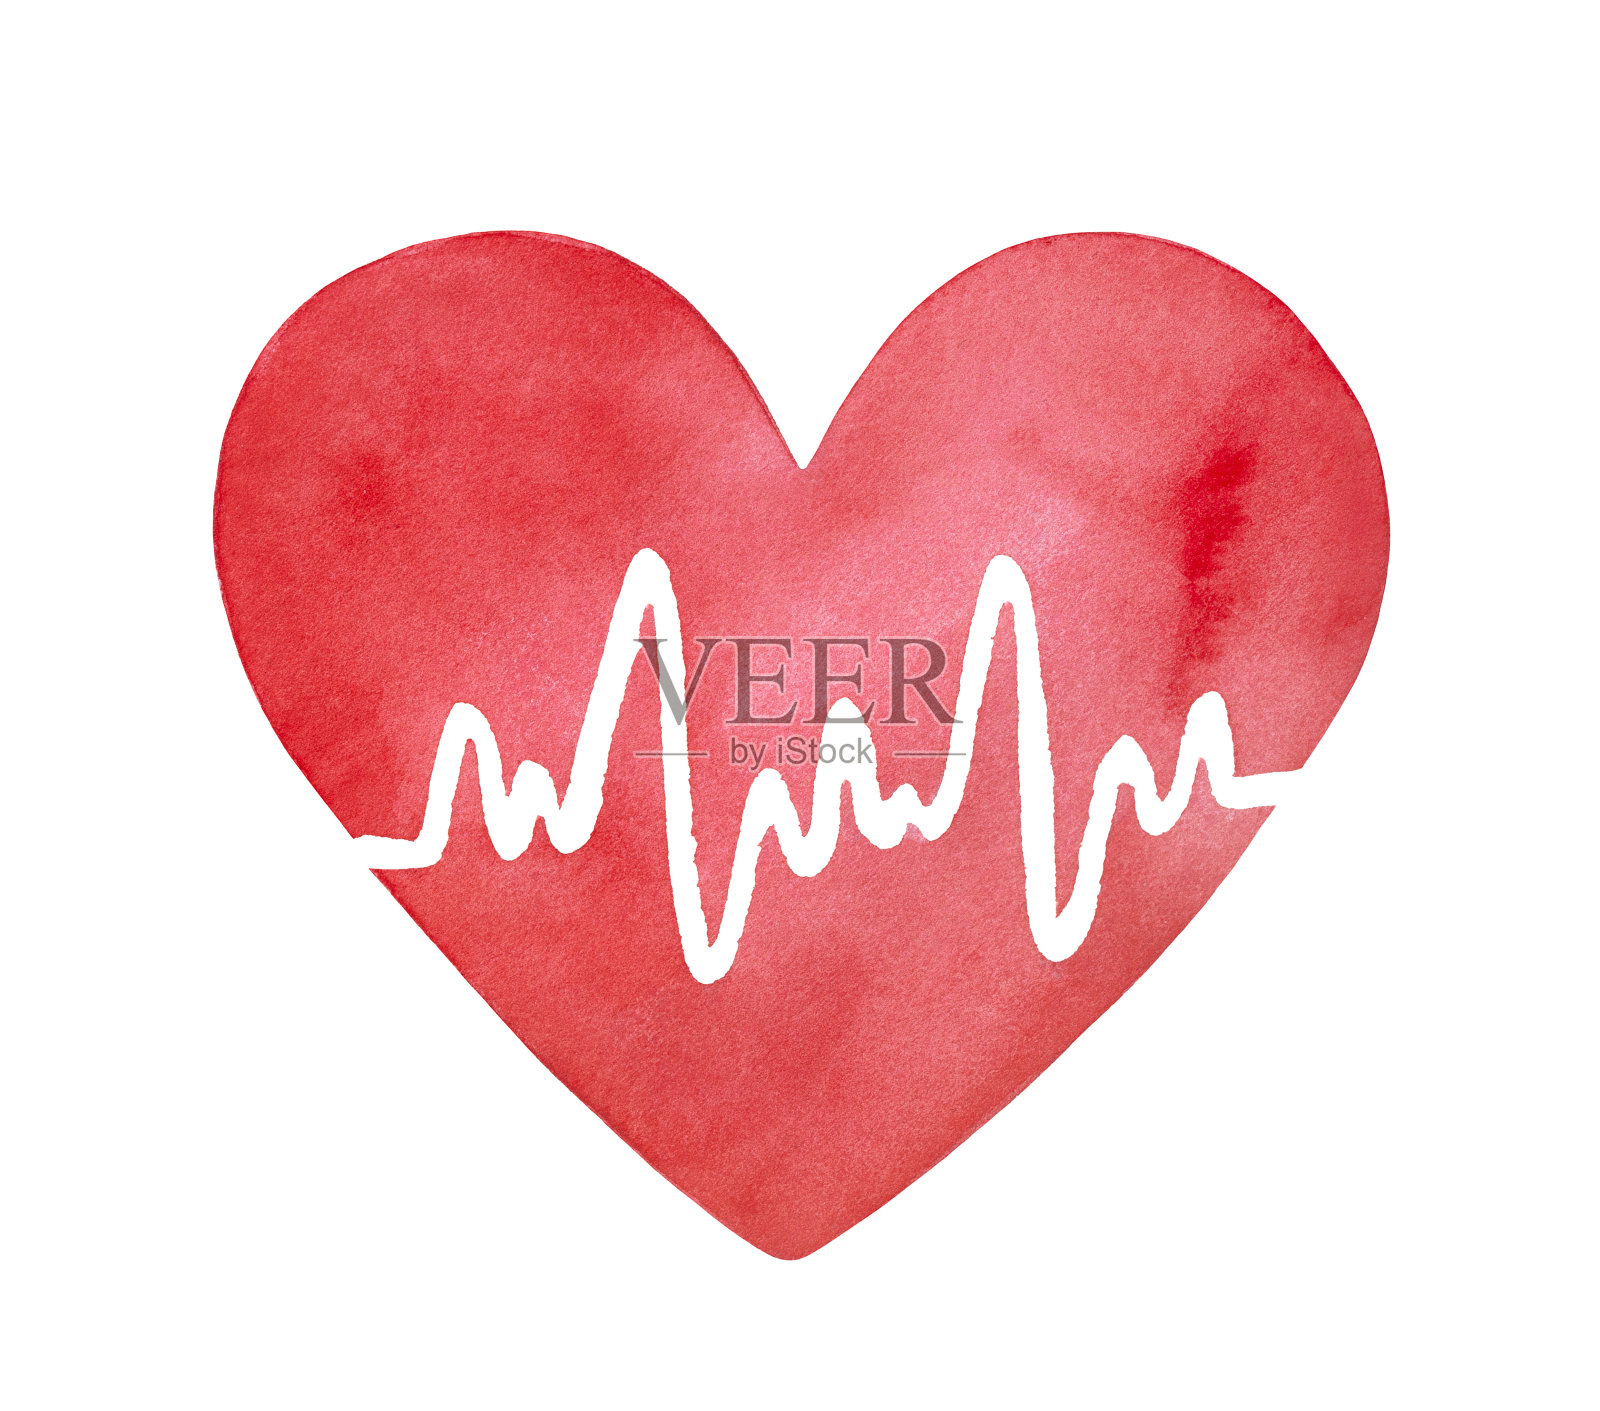 明亮的红色水彩心脏形状与白色心电图线。象征着医学、健康、心脏病学。手绘水彩艺术绘图，剪纸元素的创意设计装饰。插画图片素材